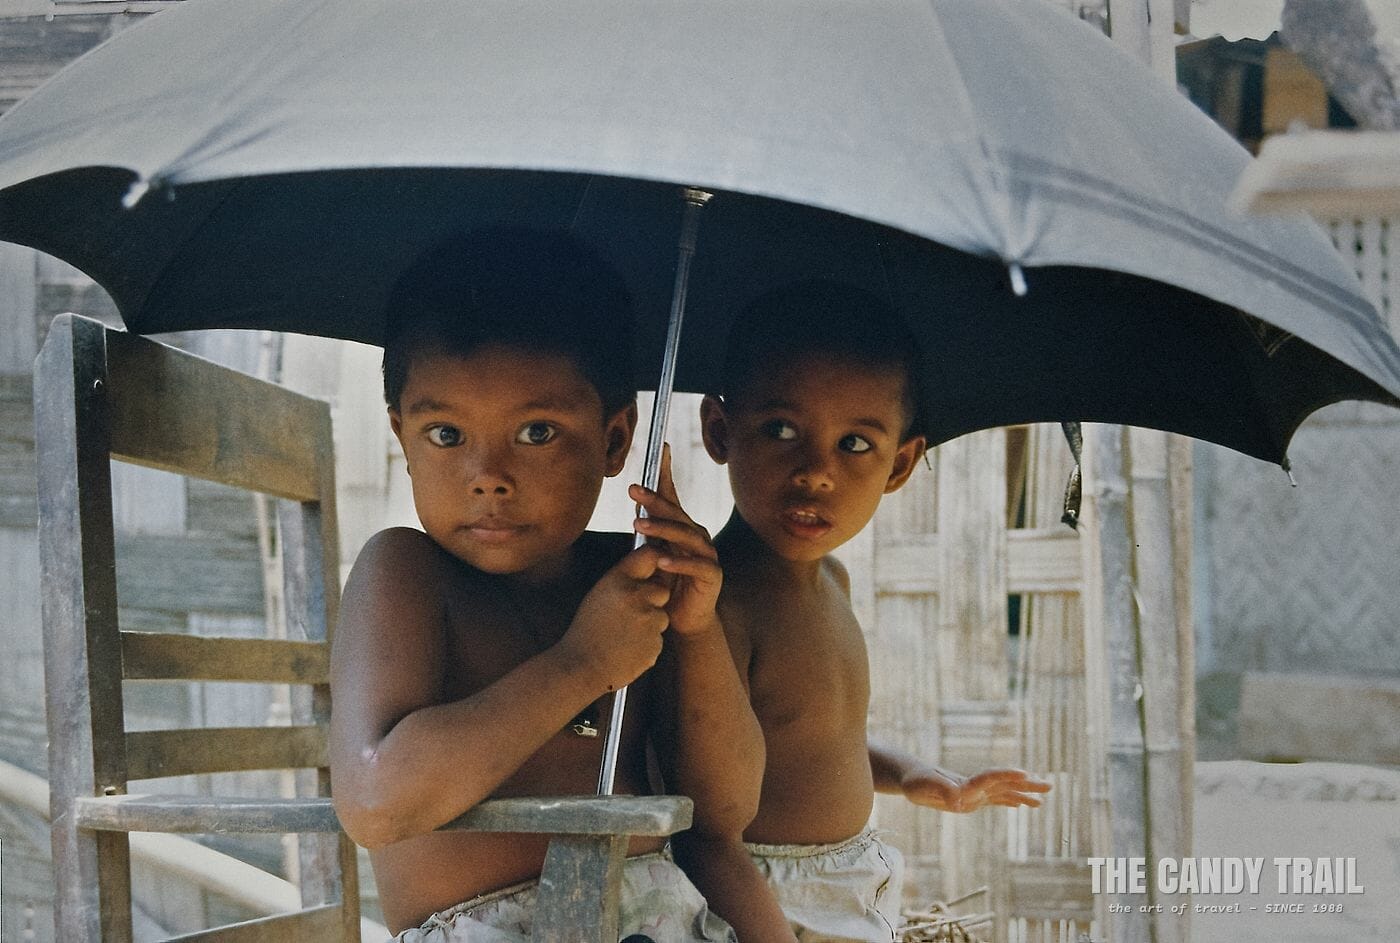 Boys shelter under an umbrella in Bangladesh, 1991.